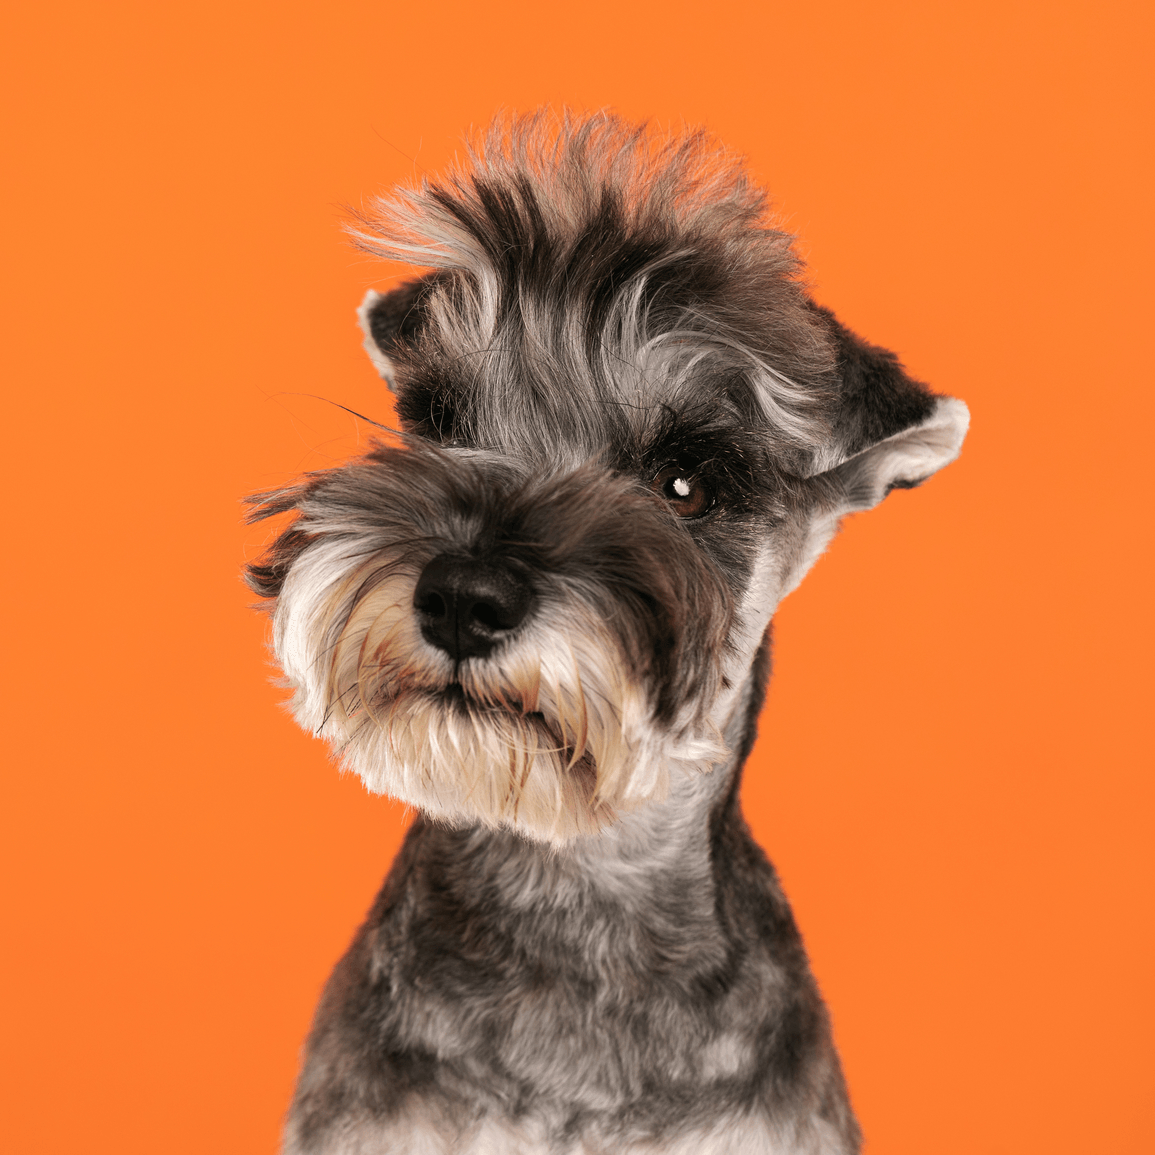 Kleiner grauer Hund vor orangem Hintergrund.